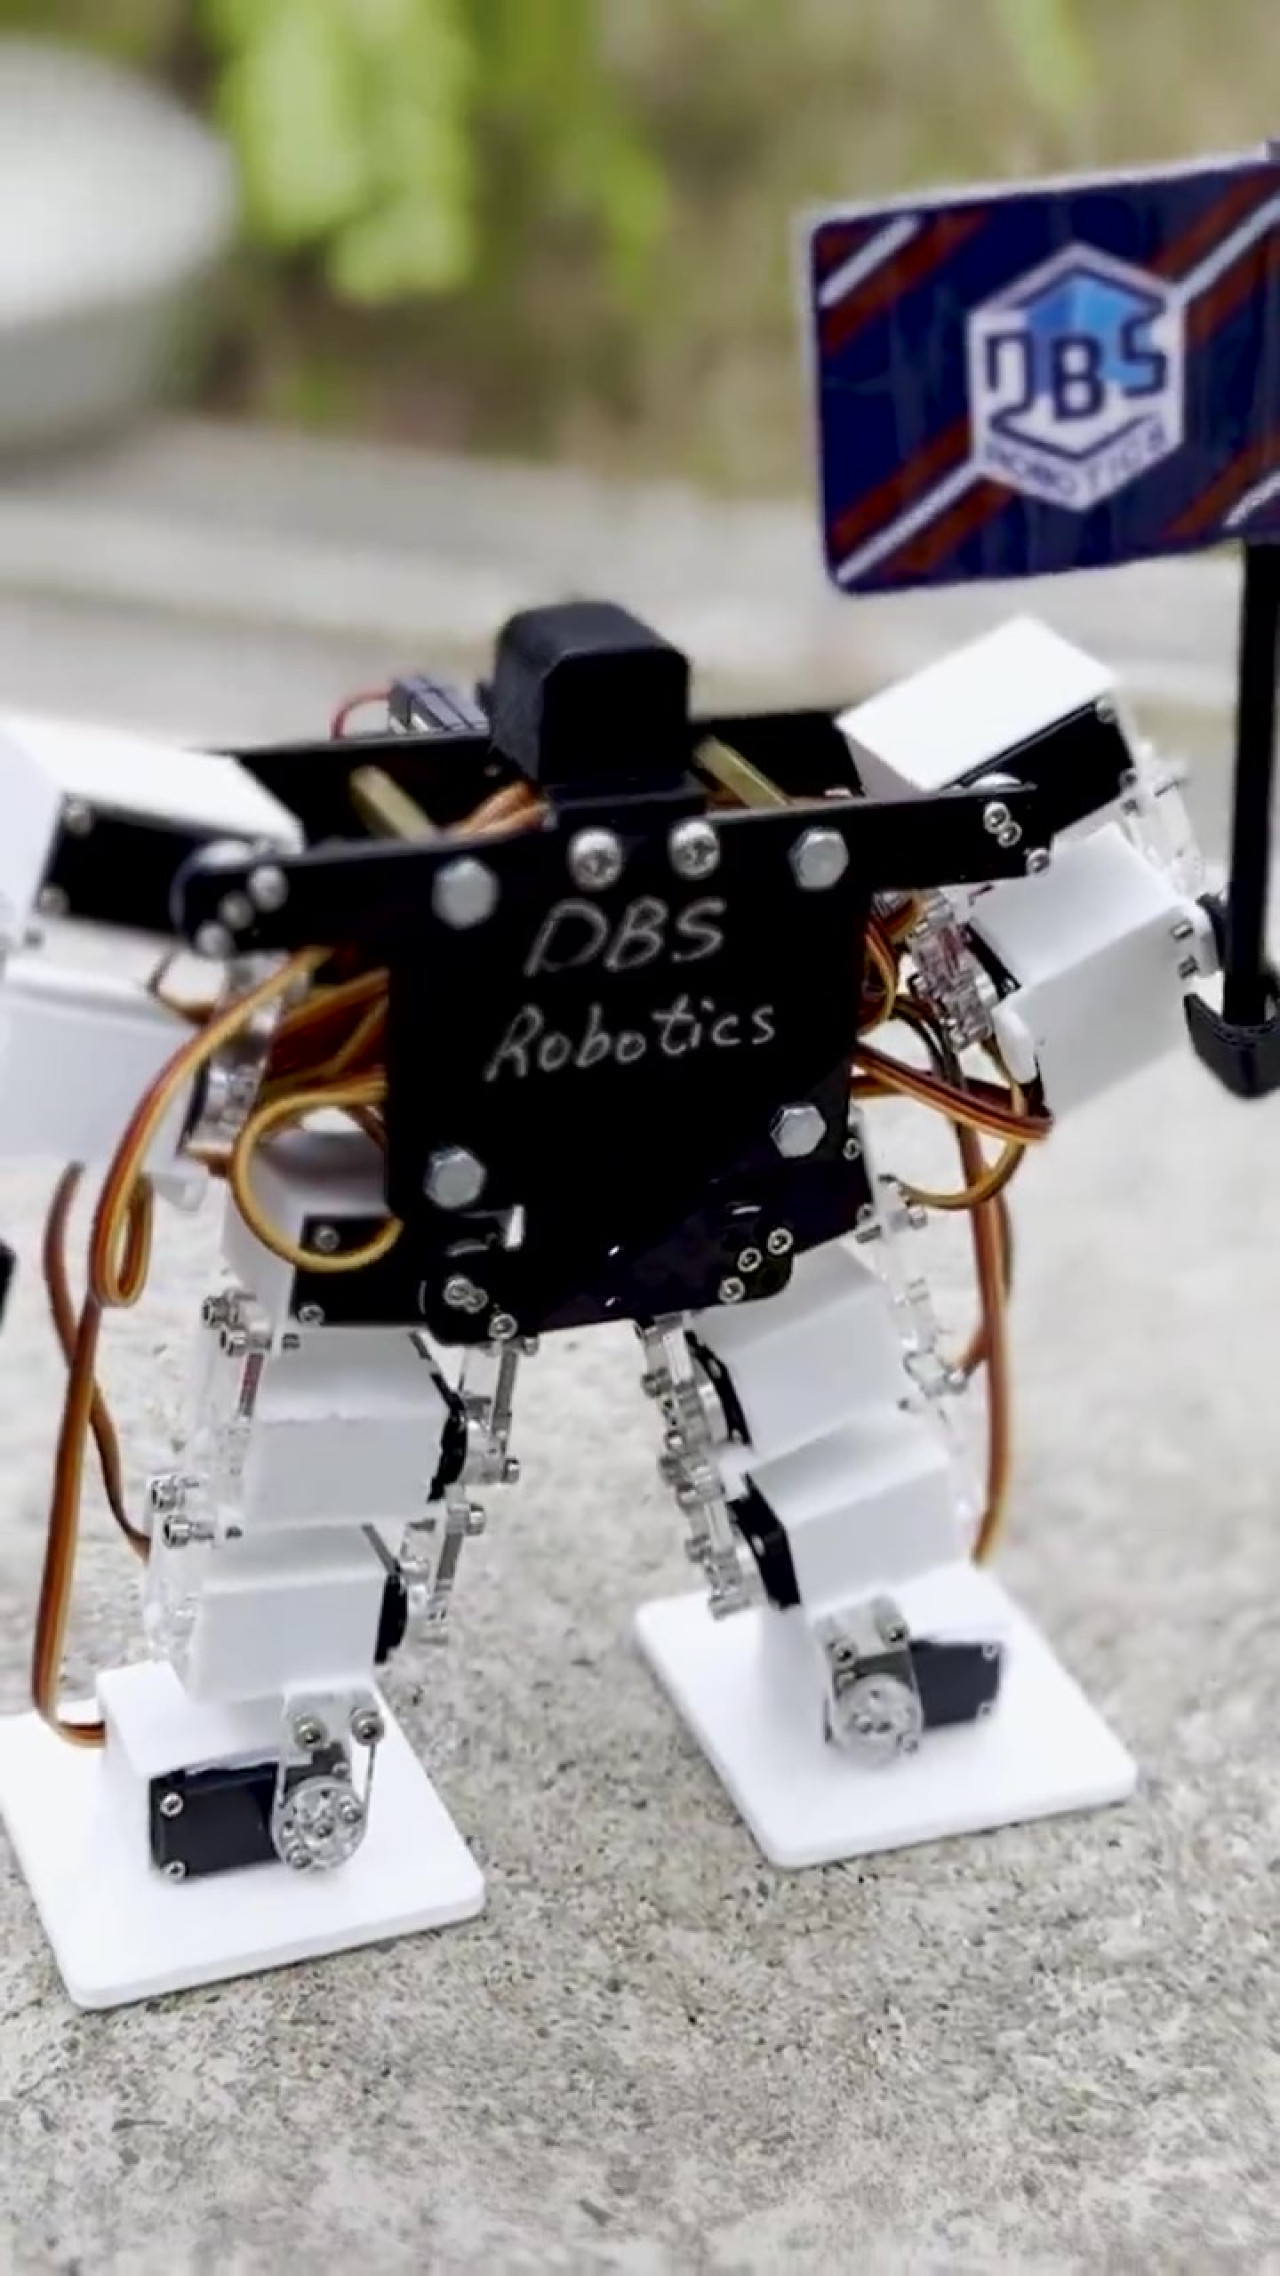 Este robot humanoide diminuto fue creado por estudiantes de entre 6 y 17 años. Foto: Captura de pantalla.